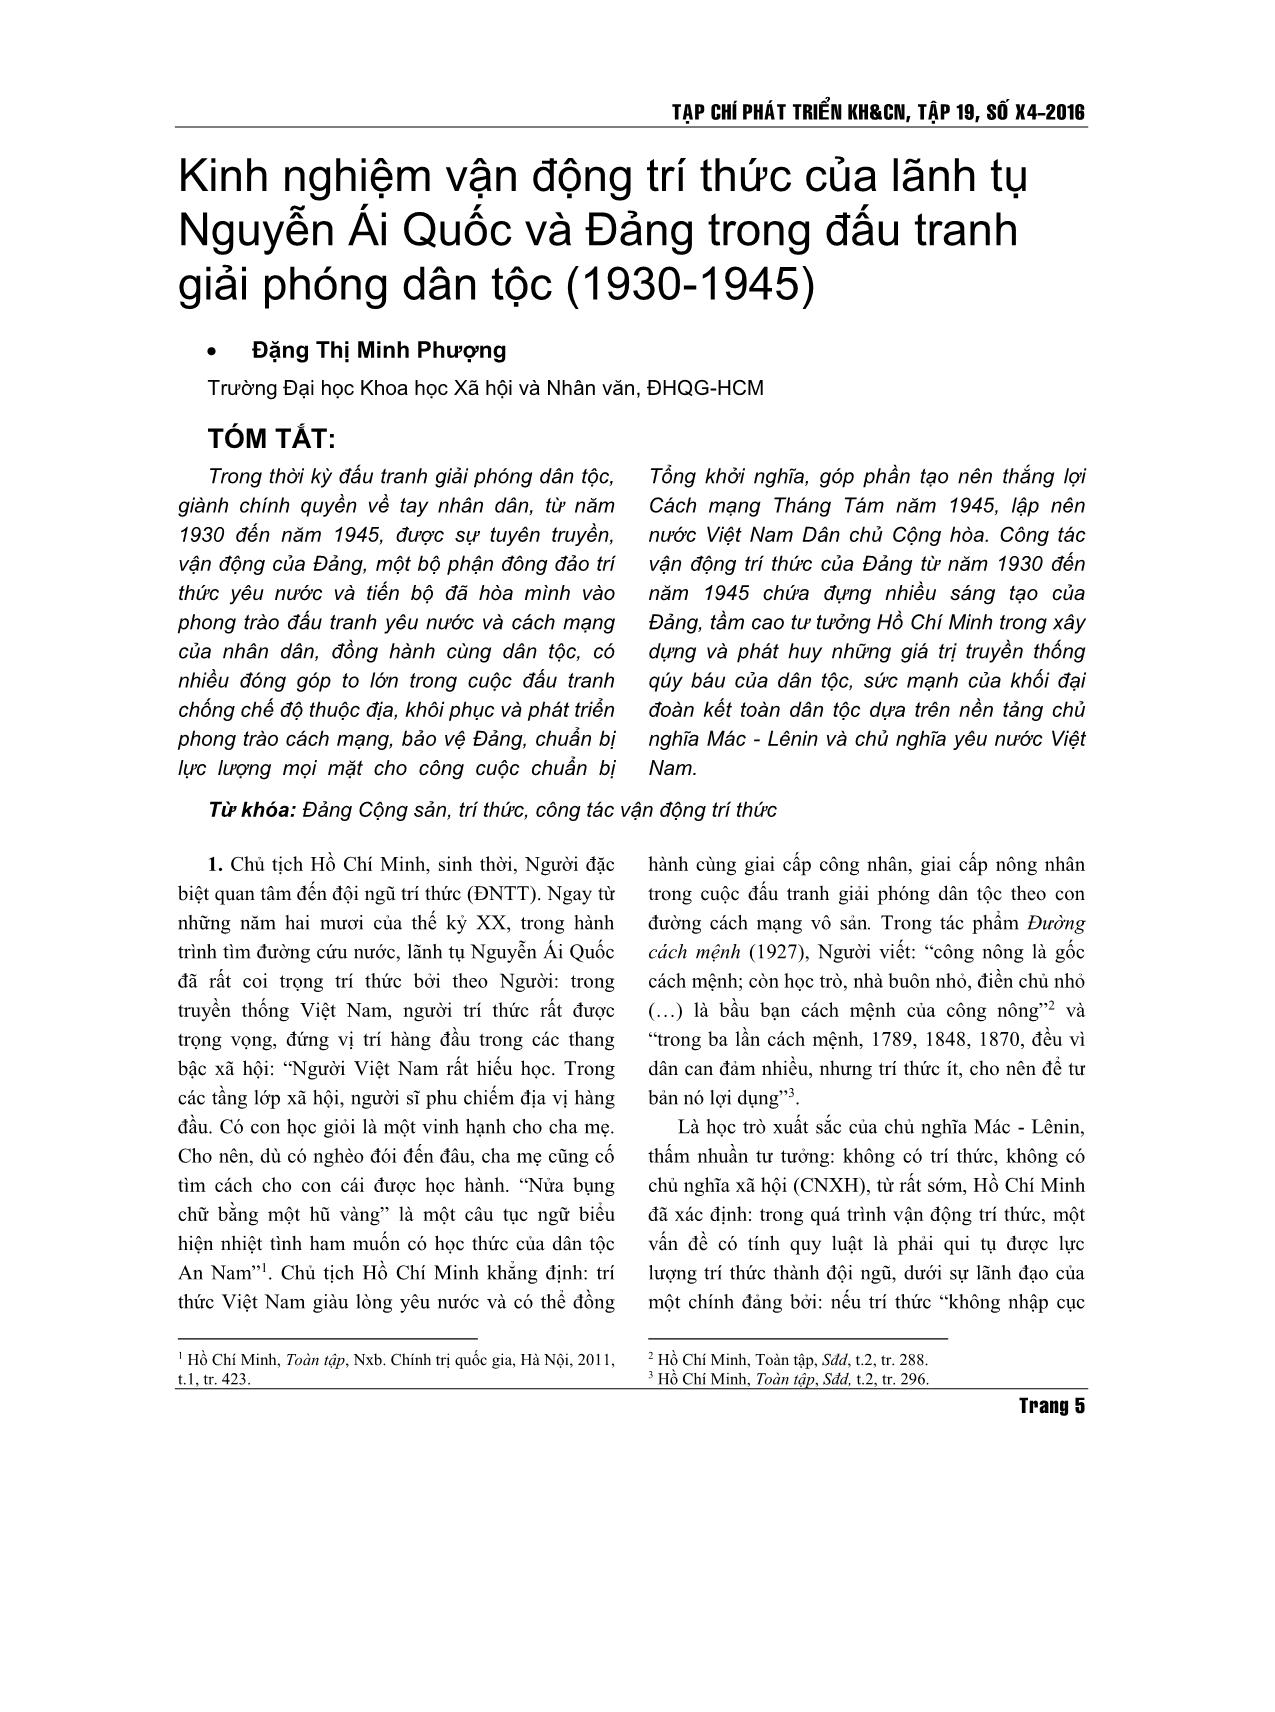 Kinh nghiệm vận động trí thức của lãnh tụ Nguyễn Ái Quốc và Đảng trong đấu tranh giải phóng dân tộc (1930-1945) trang 1